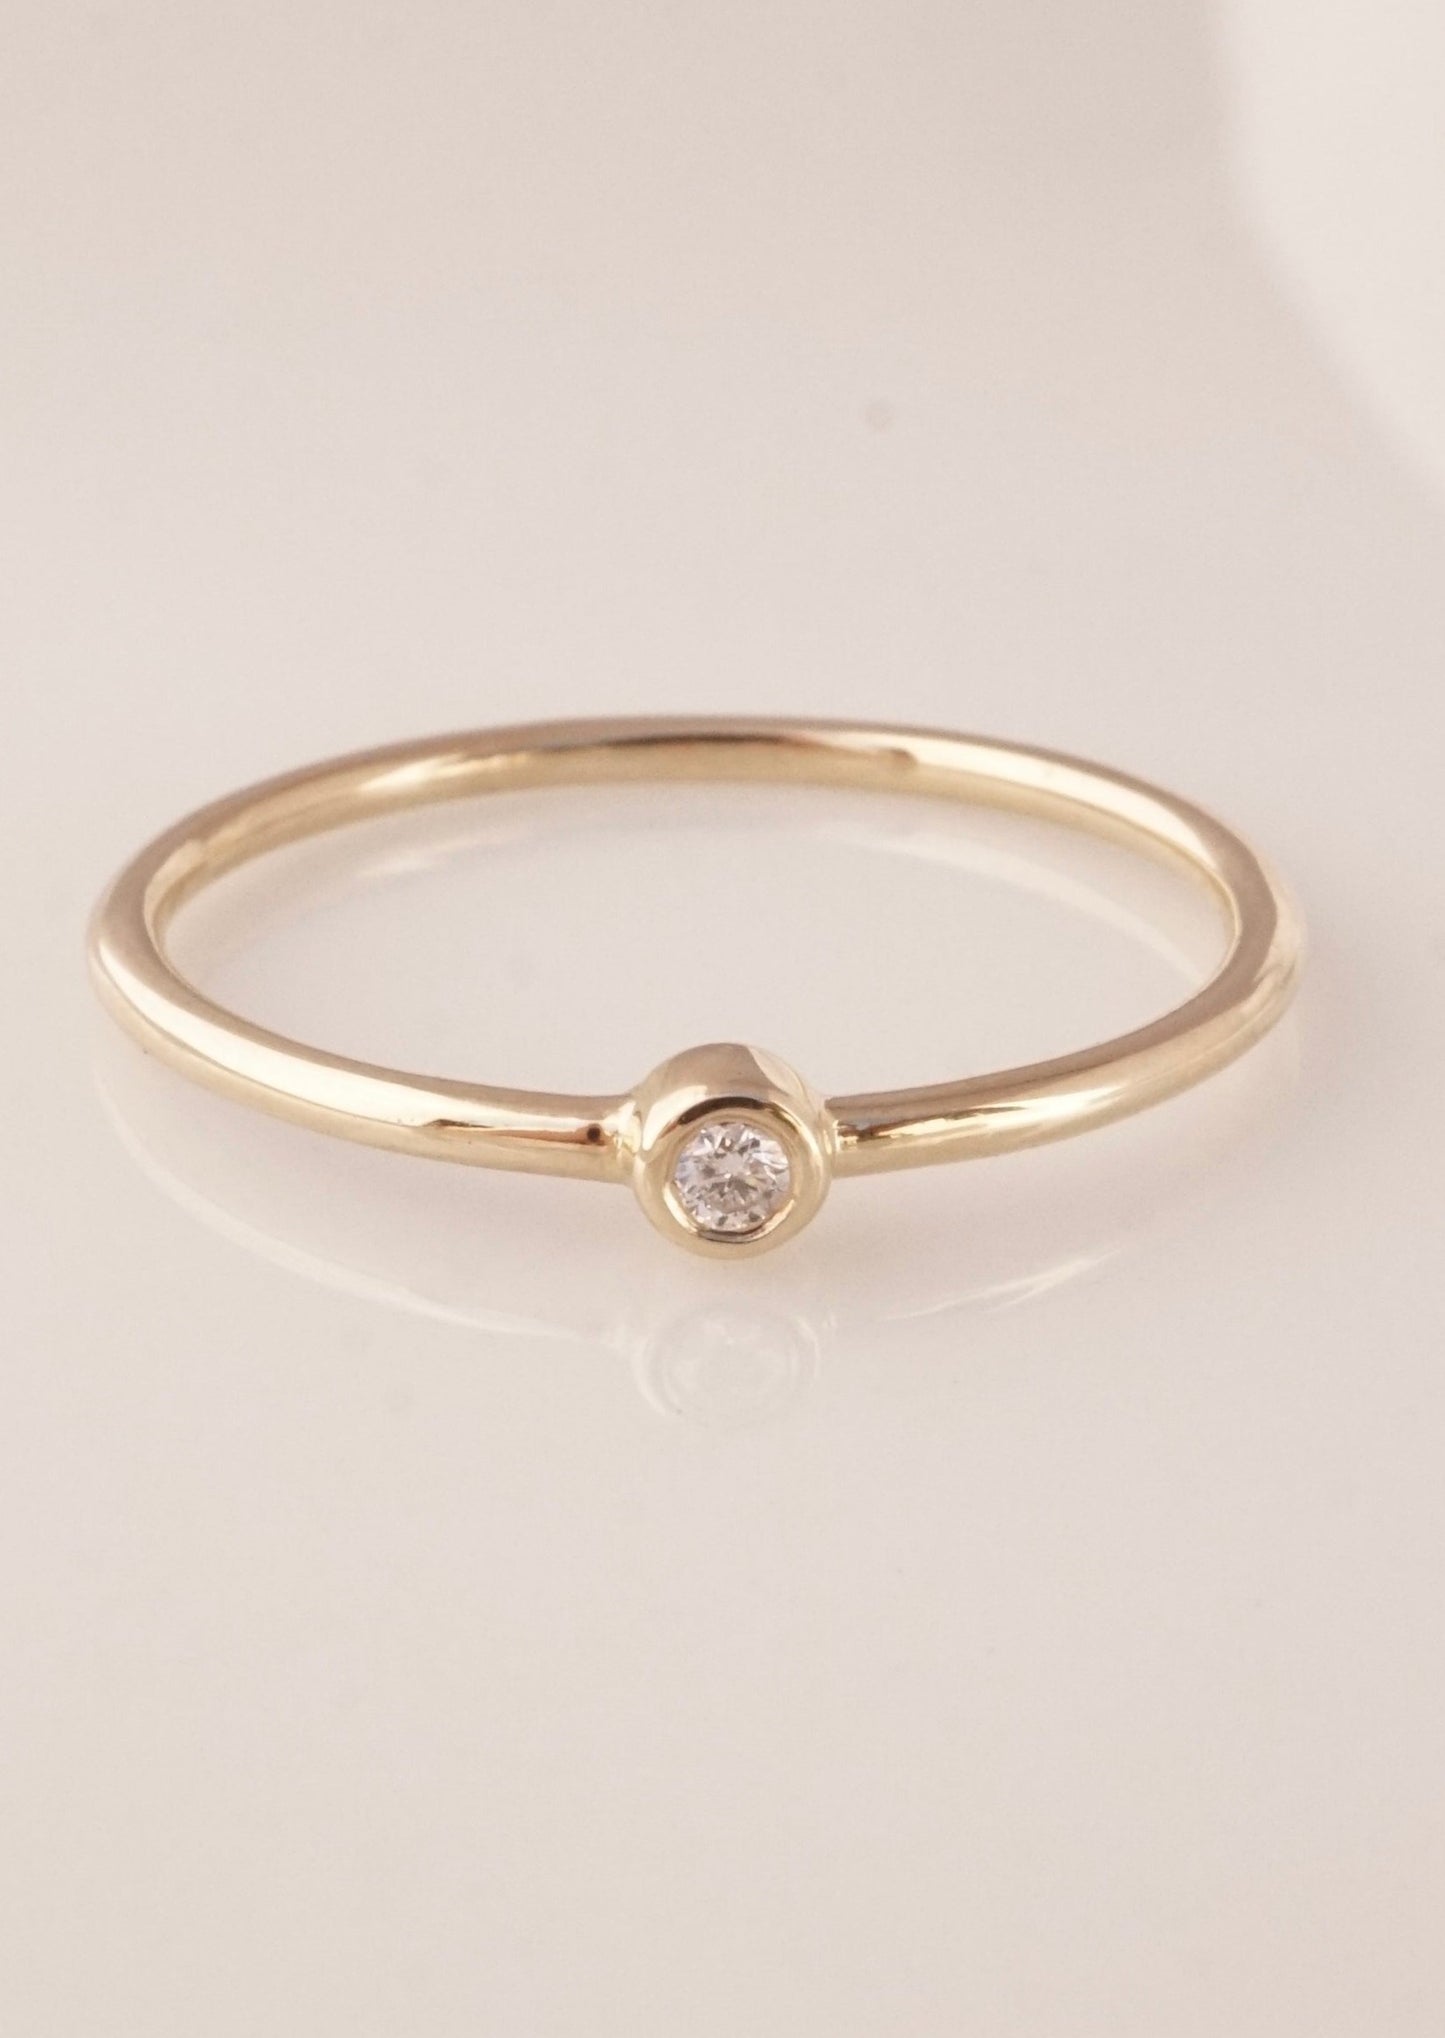 14k Gold Bezel Diamond Solitaire Ring